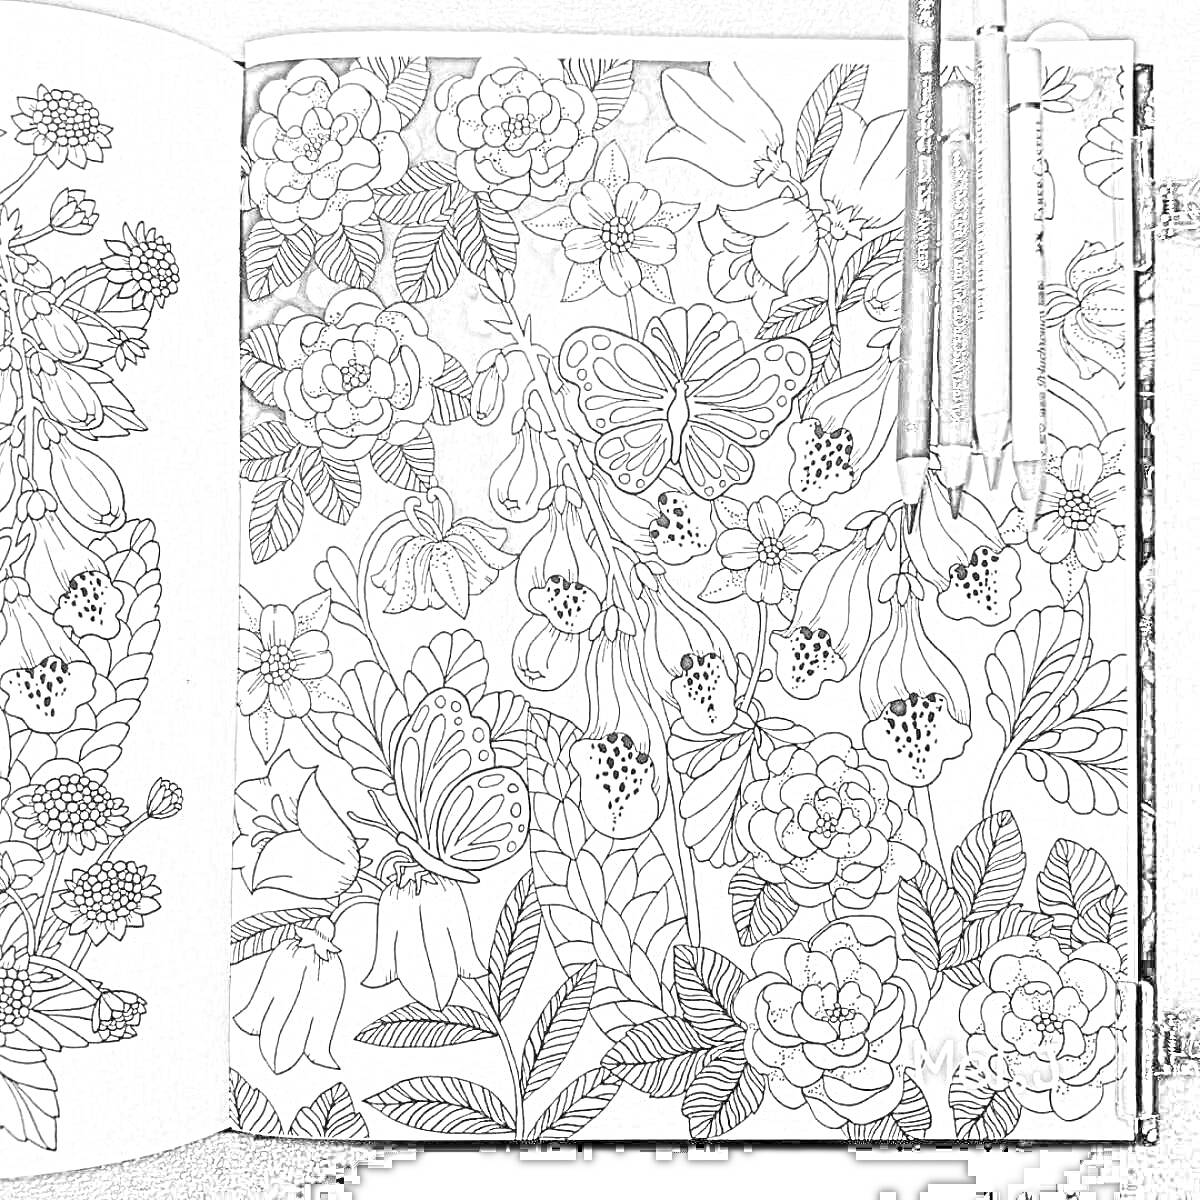 Раскраска Страница раскраски-антистресс с узорами цветов, бабочек и листьев, раскрашенная частично, с тремя цветными карандашами